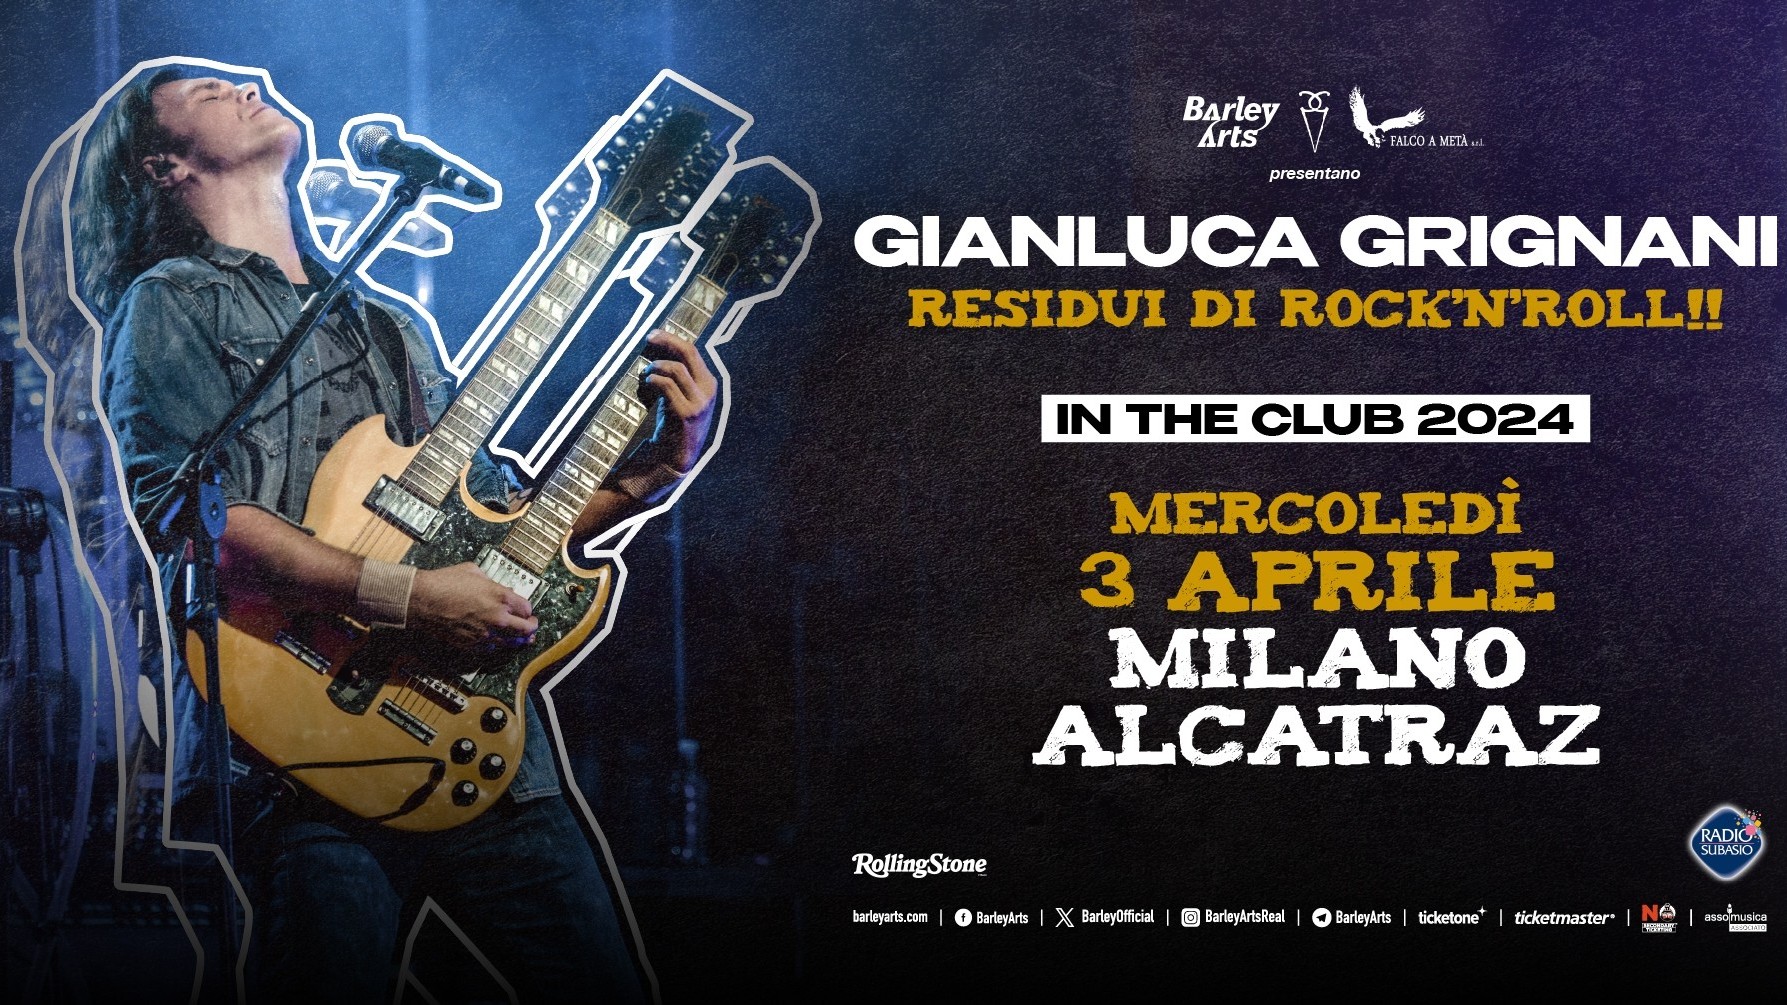 Gianluca Grignani "Residui di Rock'n'roll!"